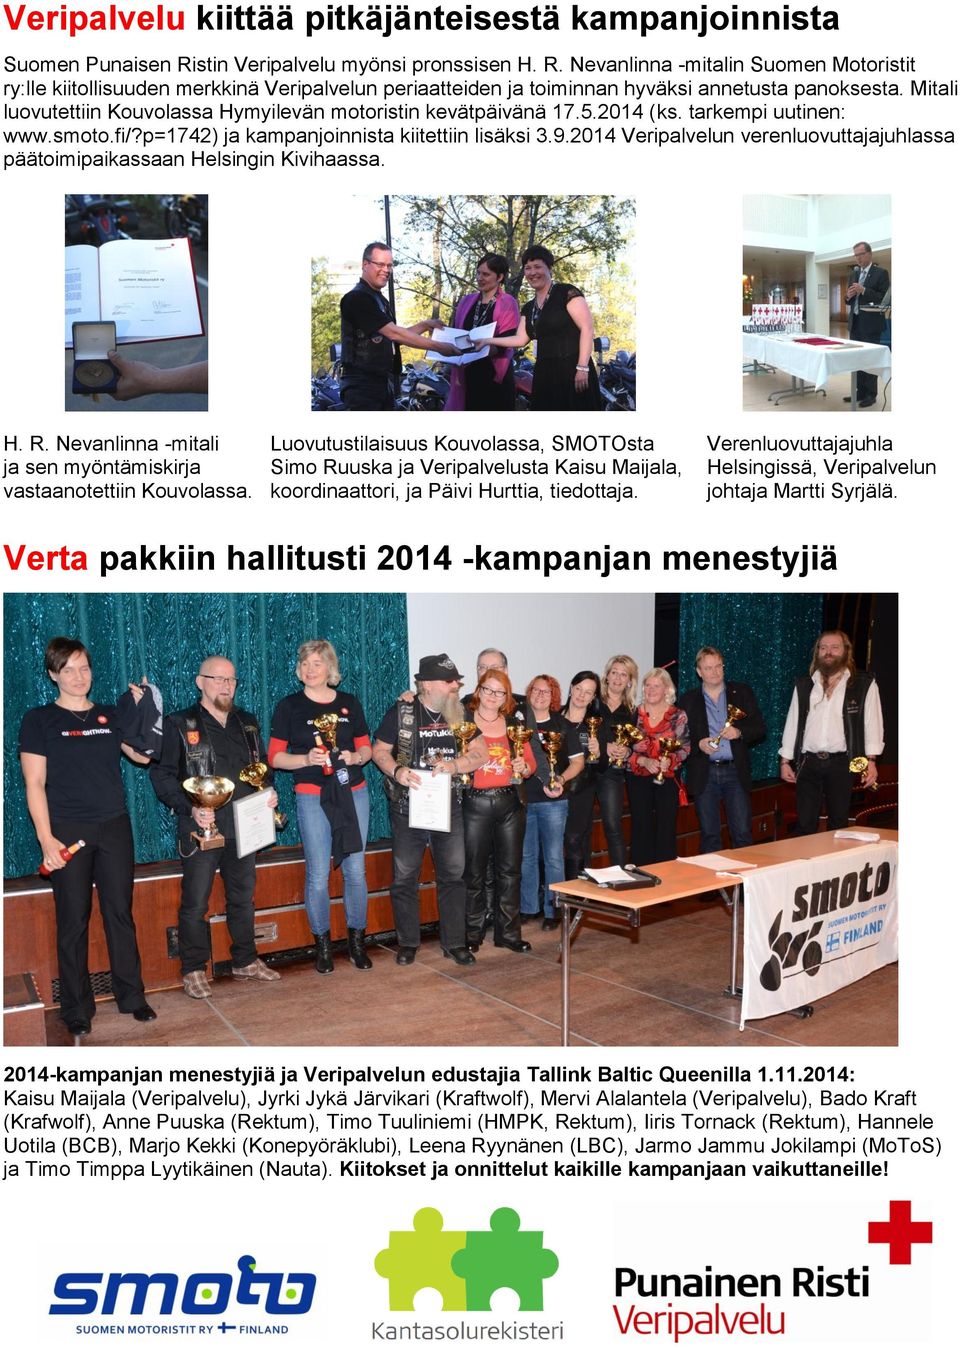 Mitali luovutettiin Kouvolassa Hymyilevän motoristin kevätpäivänä 17.5.2014 (ks. tarkempi uutinen: www.smoto.fi/?p=1742) ja kampanjoinnista kiitettiin lisäksi 3.9.